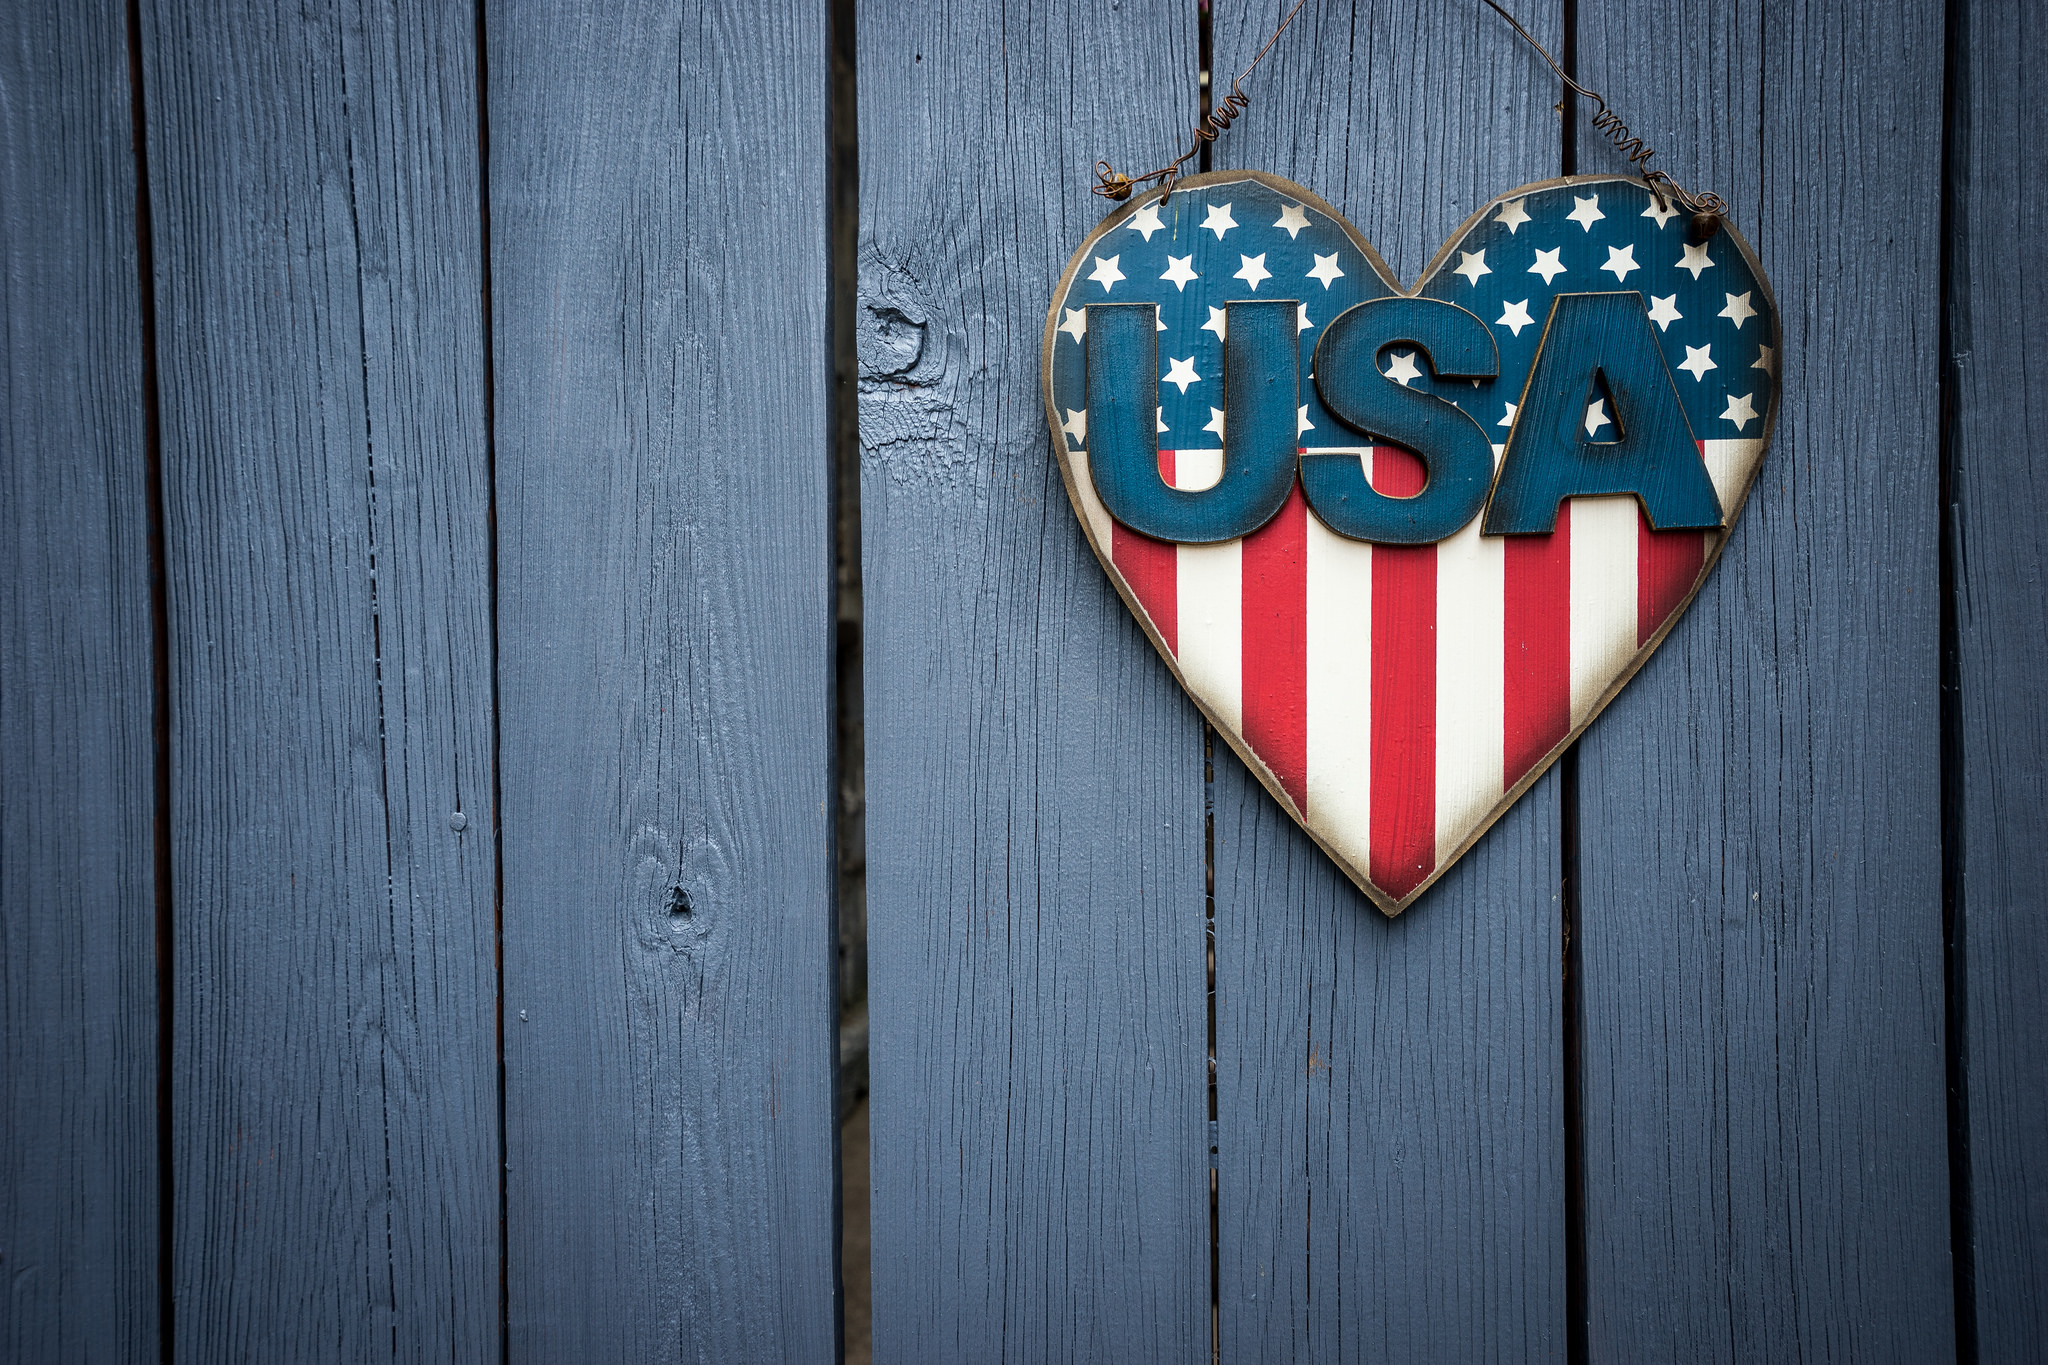 heart, Flag, Wooden surface, USA Wallpaper